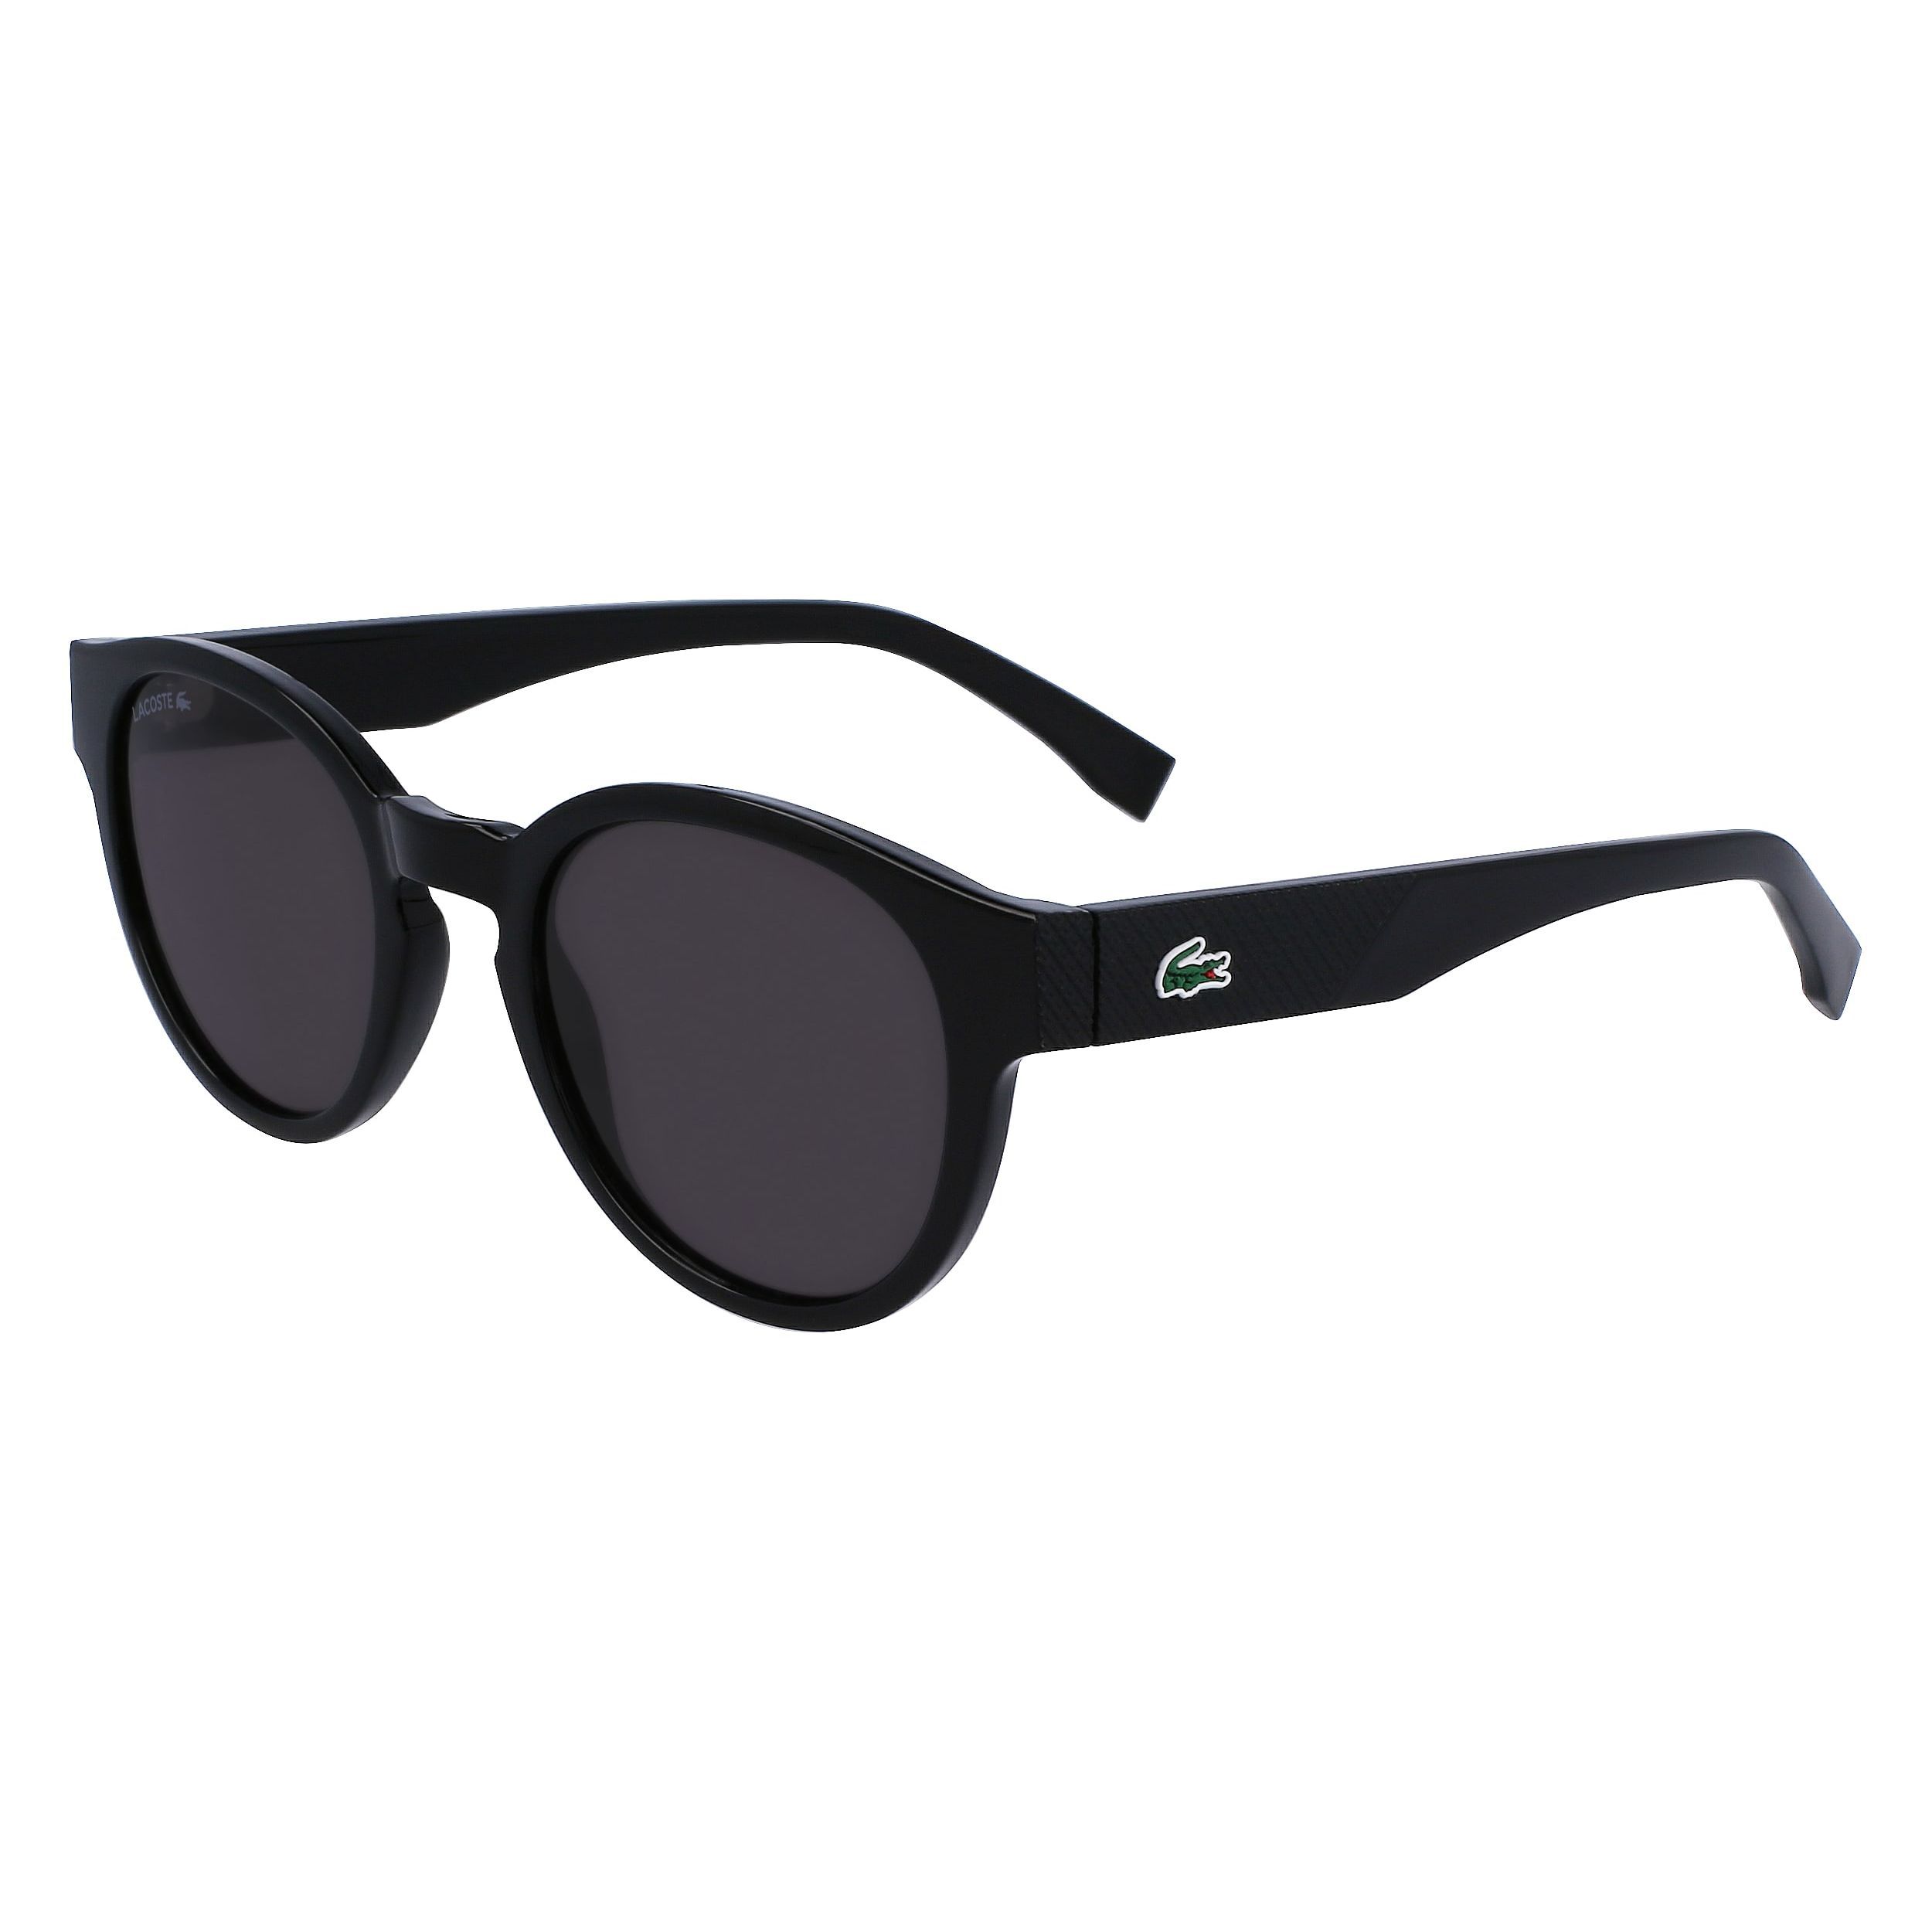 L6000S Round Sunglasses 001 - size 51